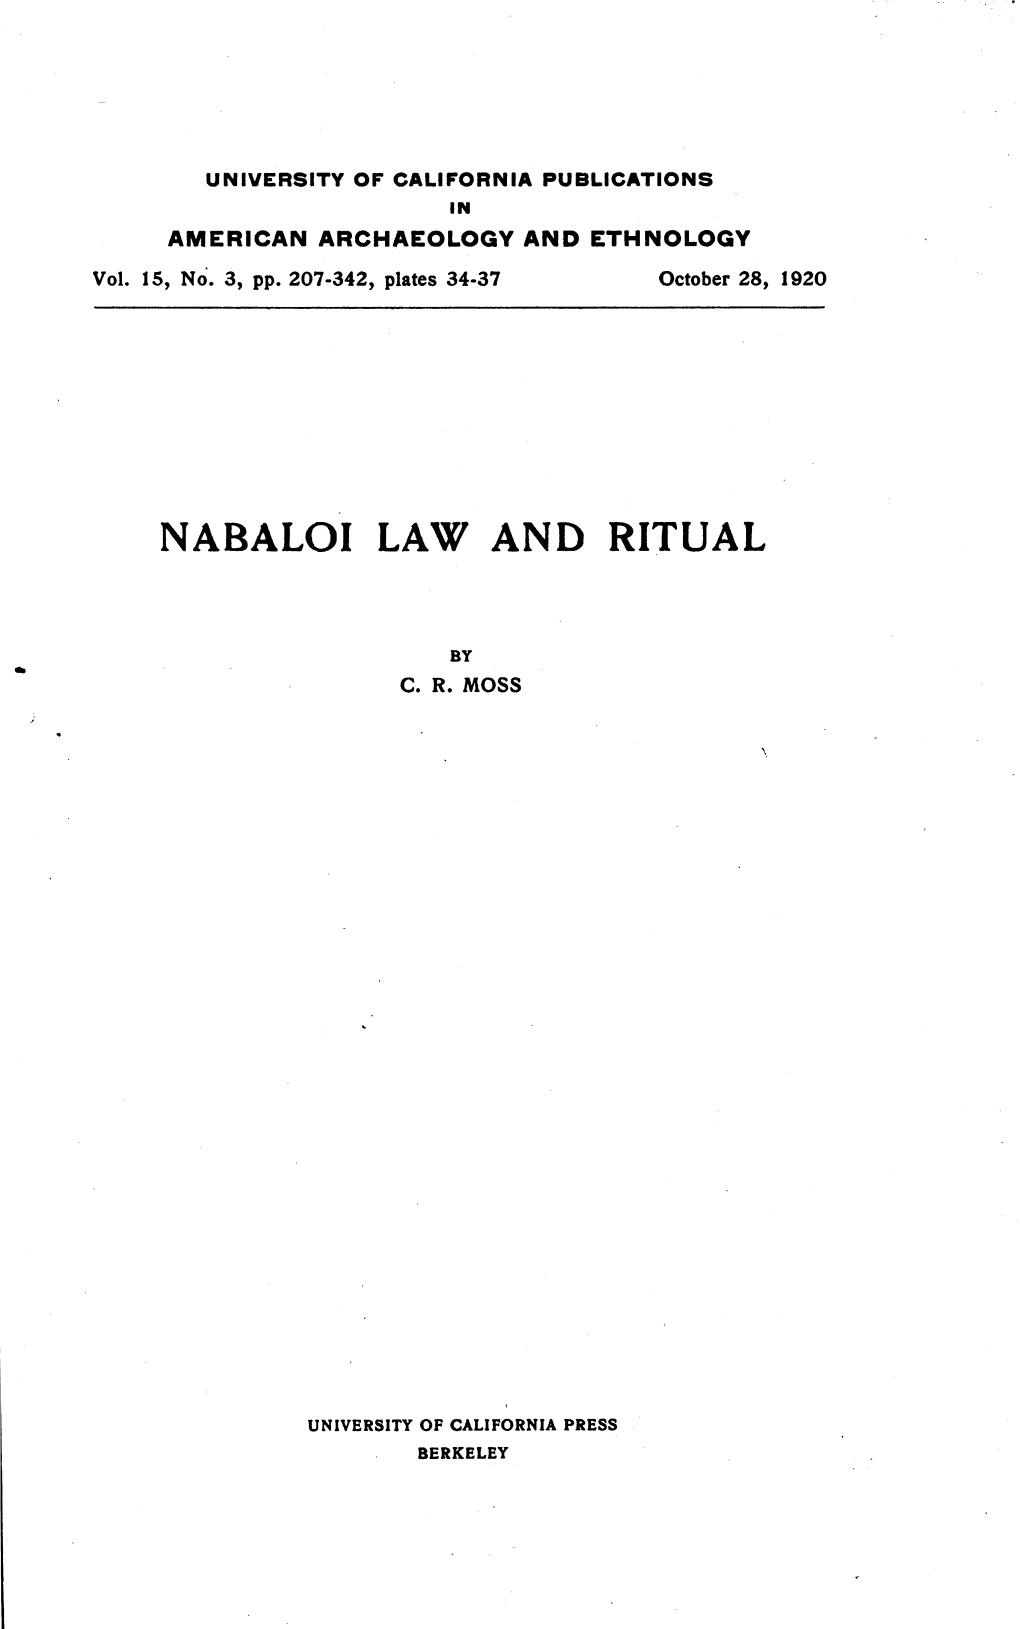 Nabaloi Law and Ritual